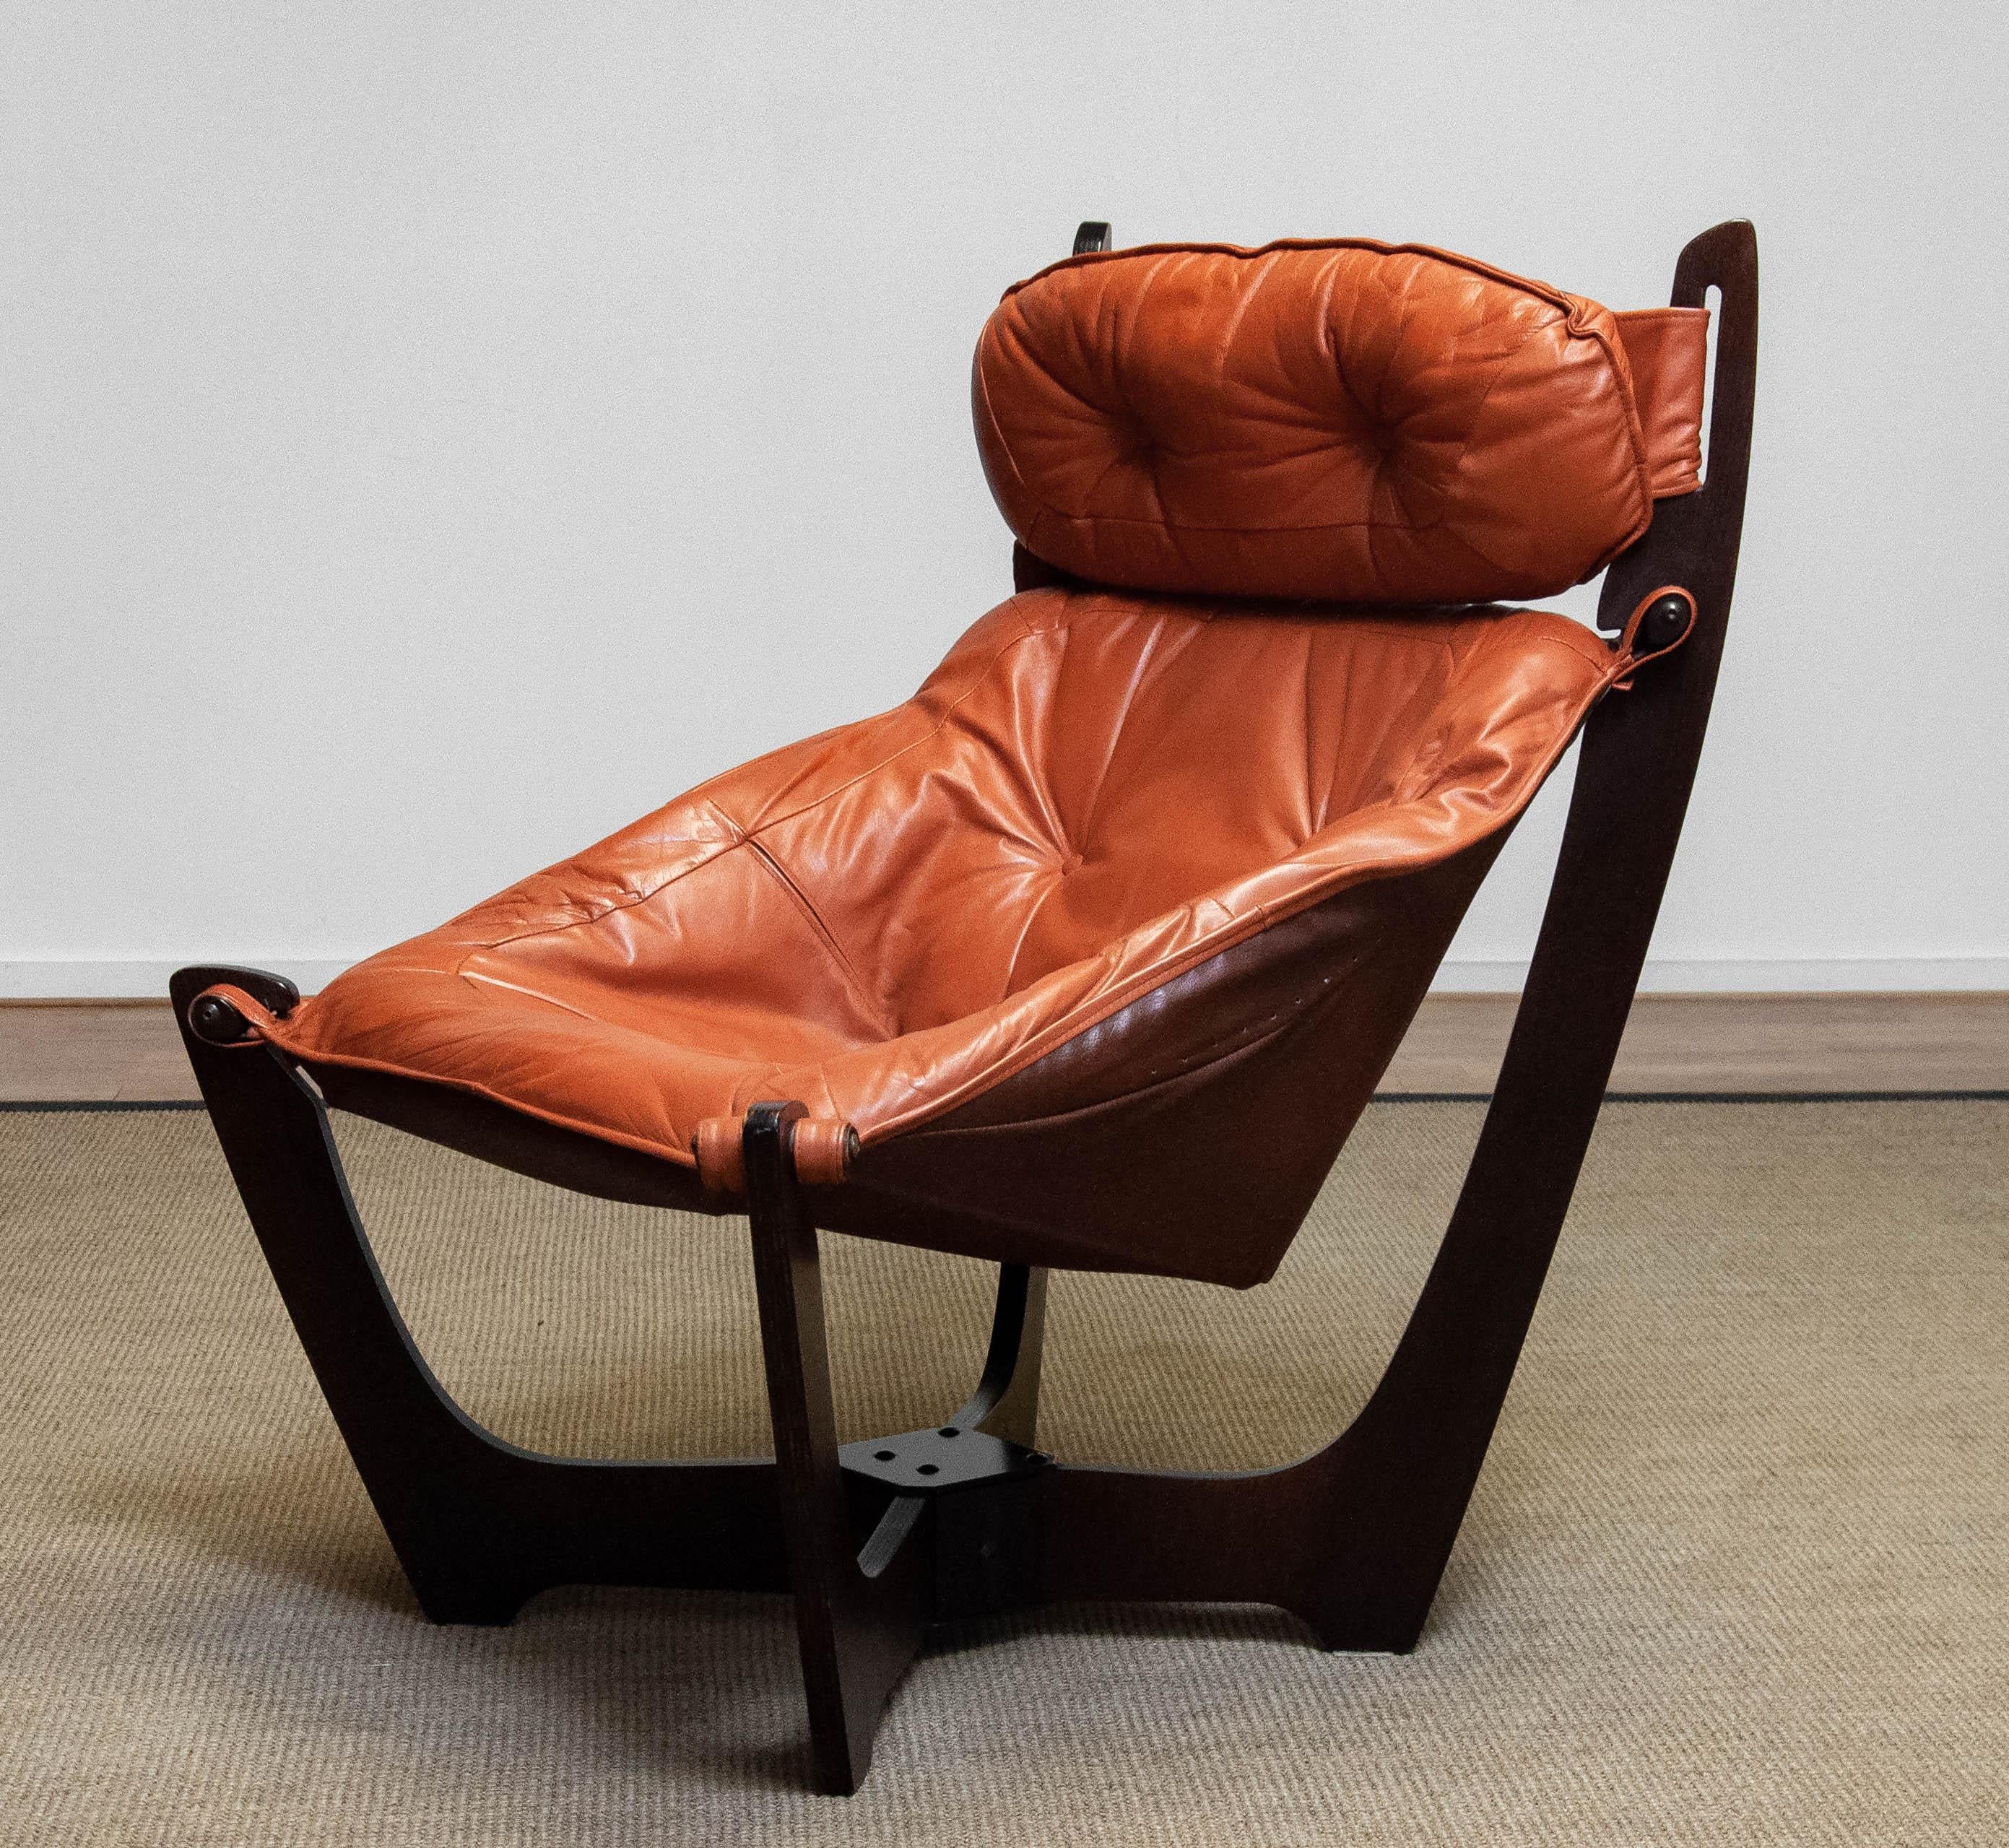 1970s Cognac Leather Lounge Chair 'Luna' by Odd Knutsen for Hjellegjerde Møbler 1